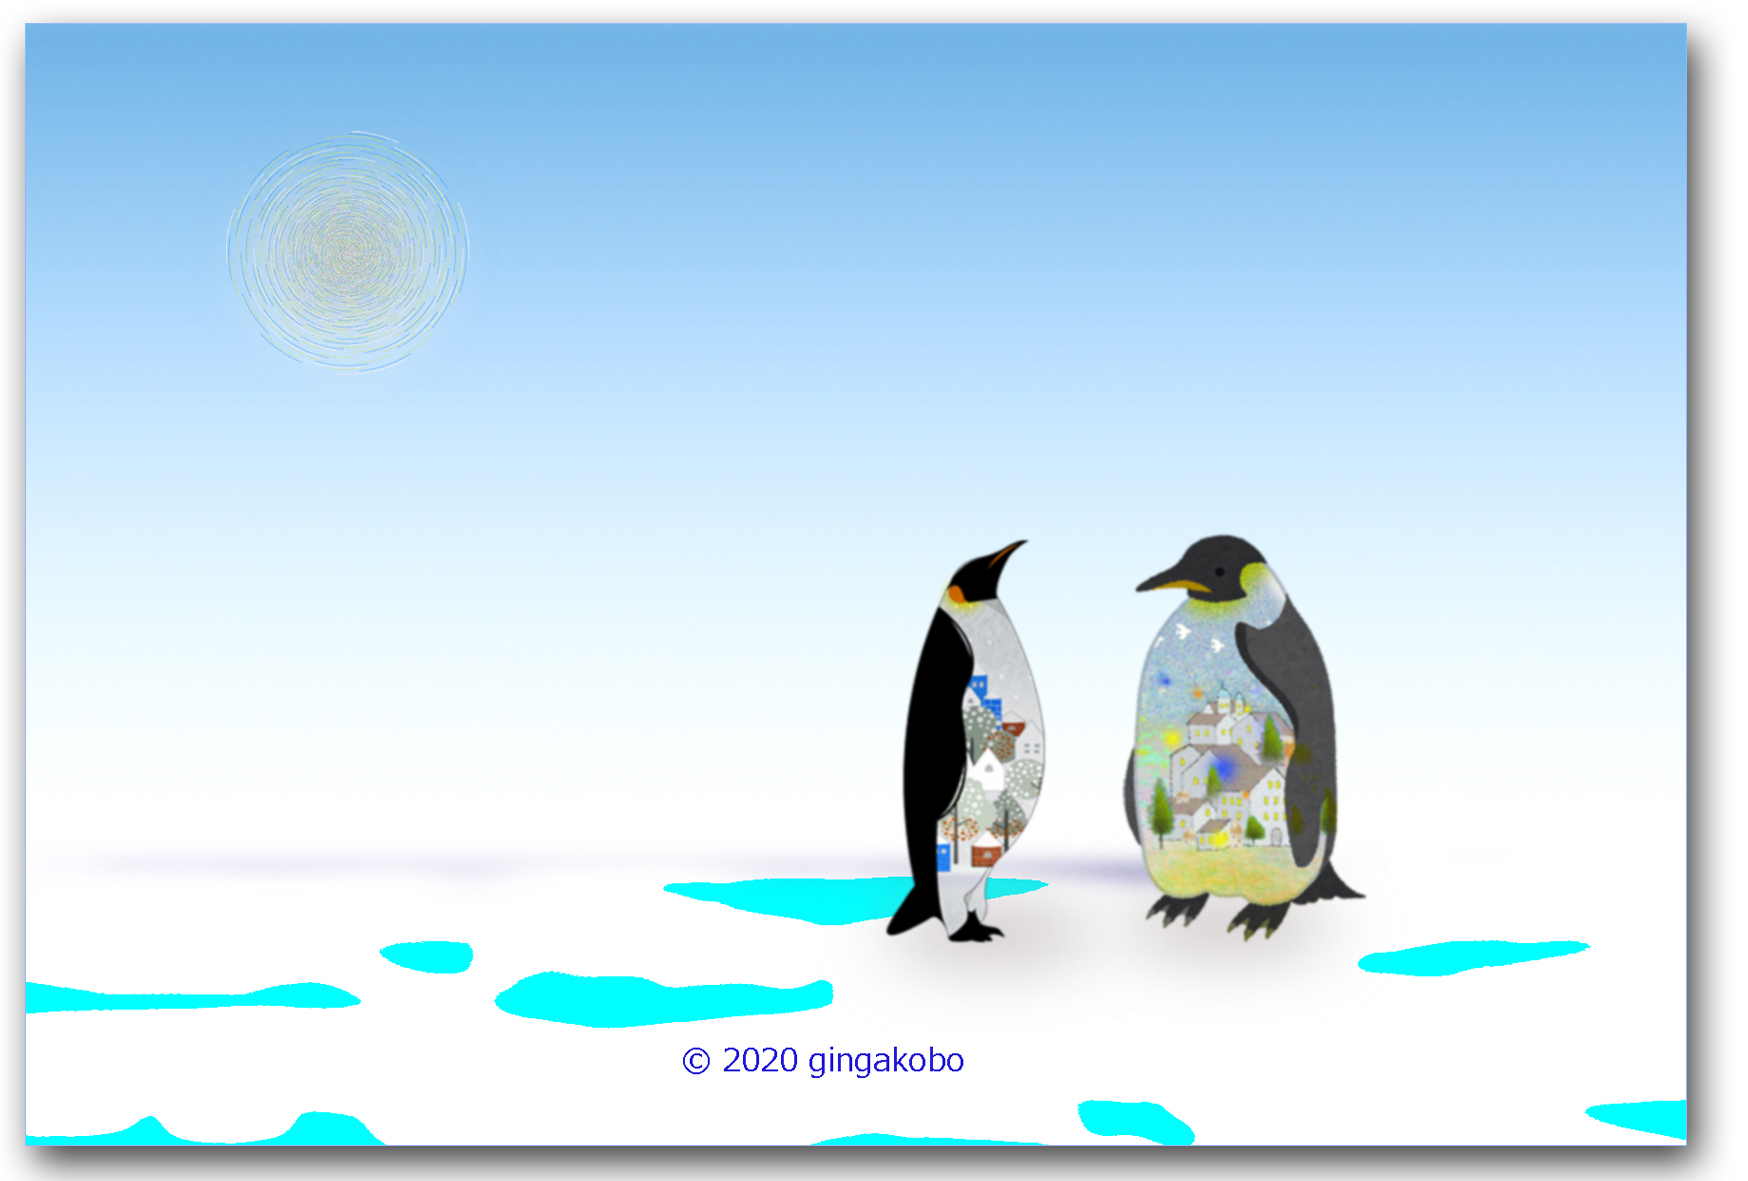 北欧柄のペンギンのあのね話 ほっこり癒しのイラストポストカード2枚組 No 941 Iichi ハンドメイド クラフト作品 手仕事品の通販